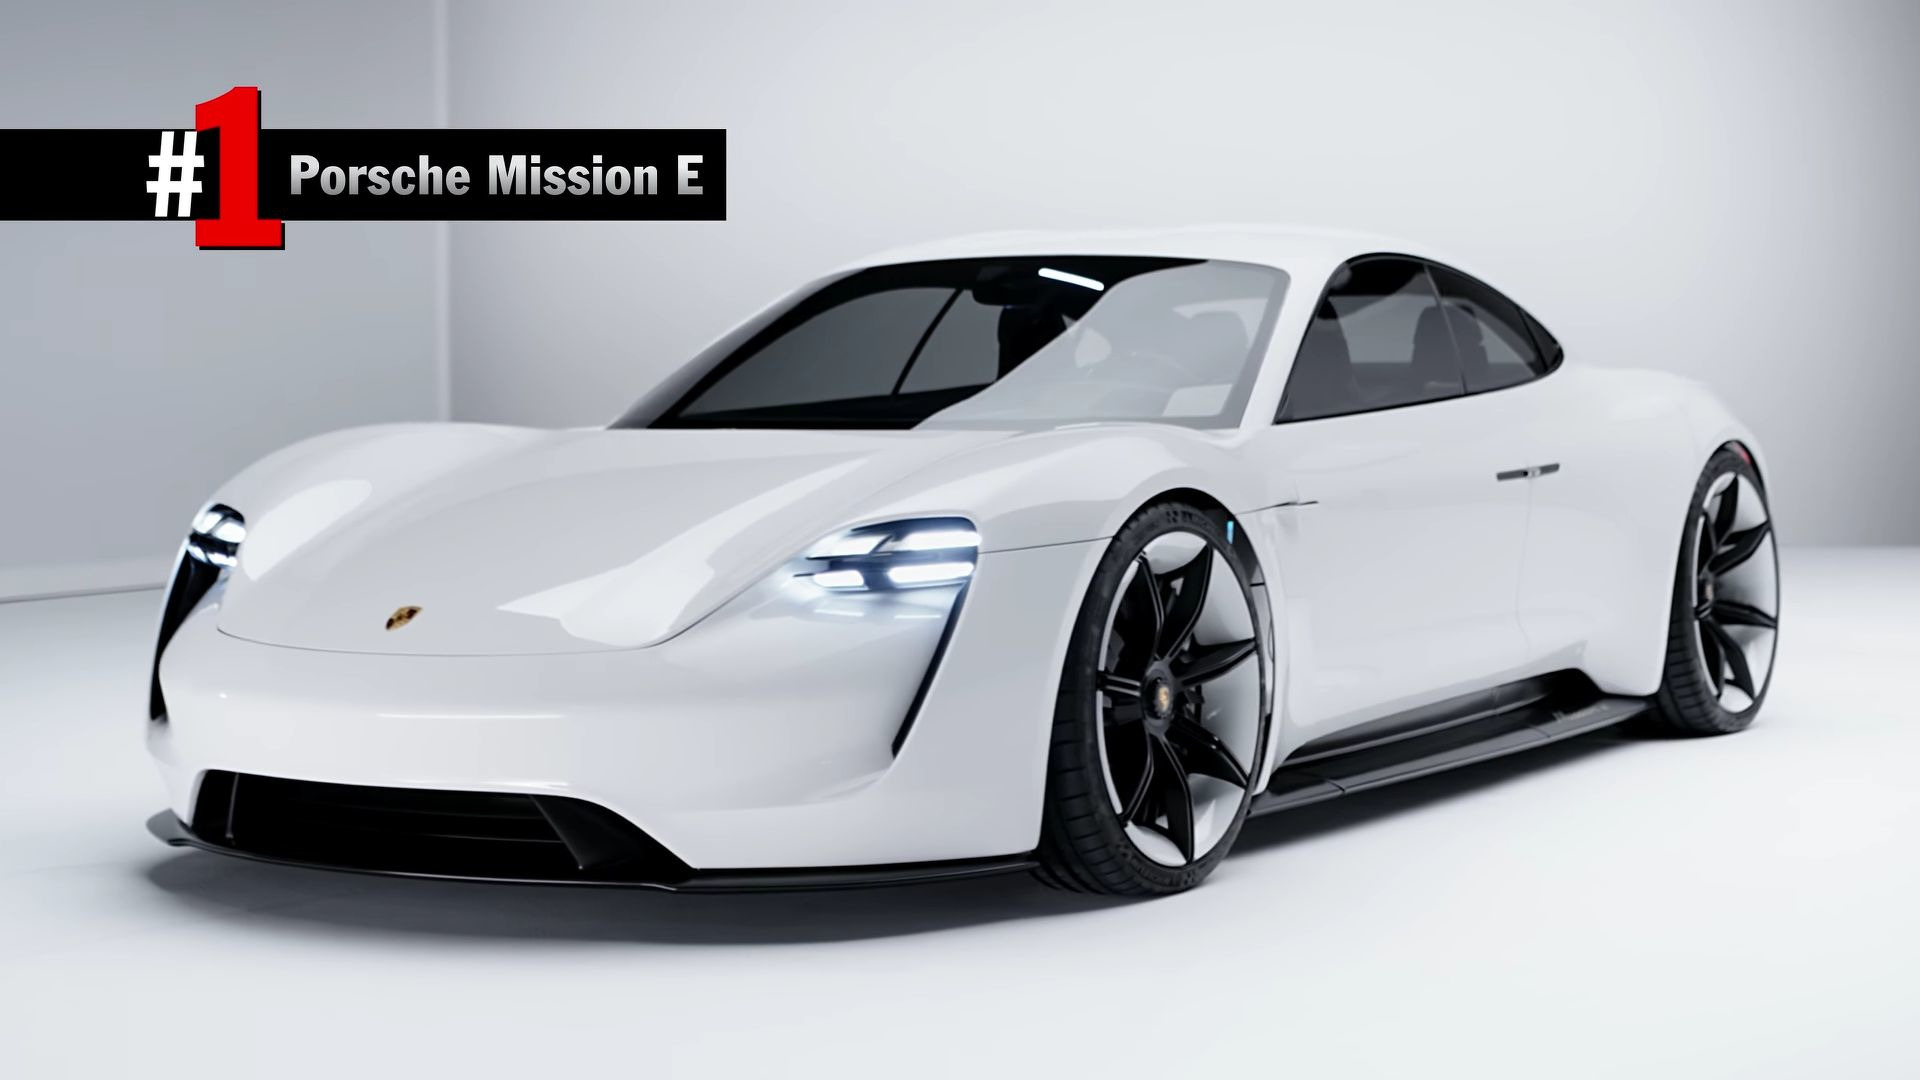 Xe concept Porsche: Hãy khám phá những thiết kế tương lai của dòng xe Porsche với những hình ảnh xe concept Porsche hấp dẫn. Thiết kế độc đáo và hiện đại của các chiếc xe này sẽ truyền cảm hứng cho bạn để tưởng tượng và mơ ước đến một tương lai không xa.